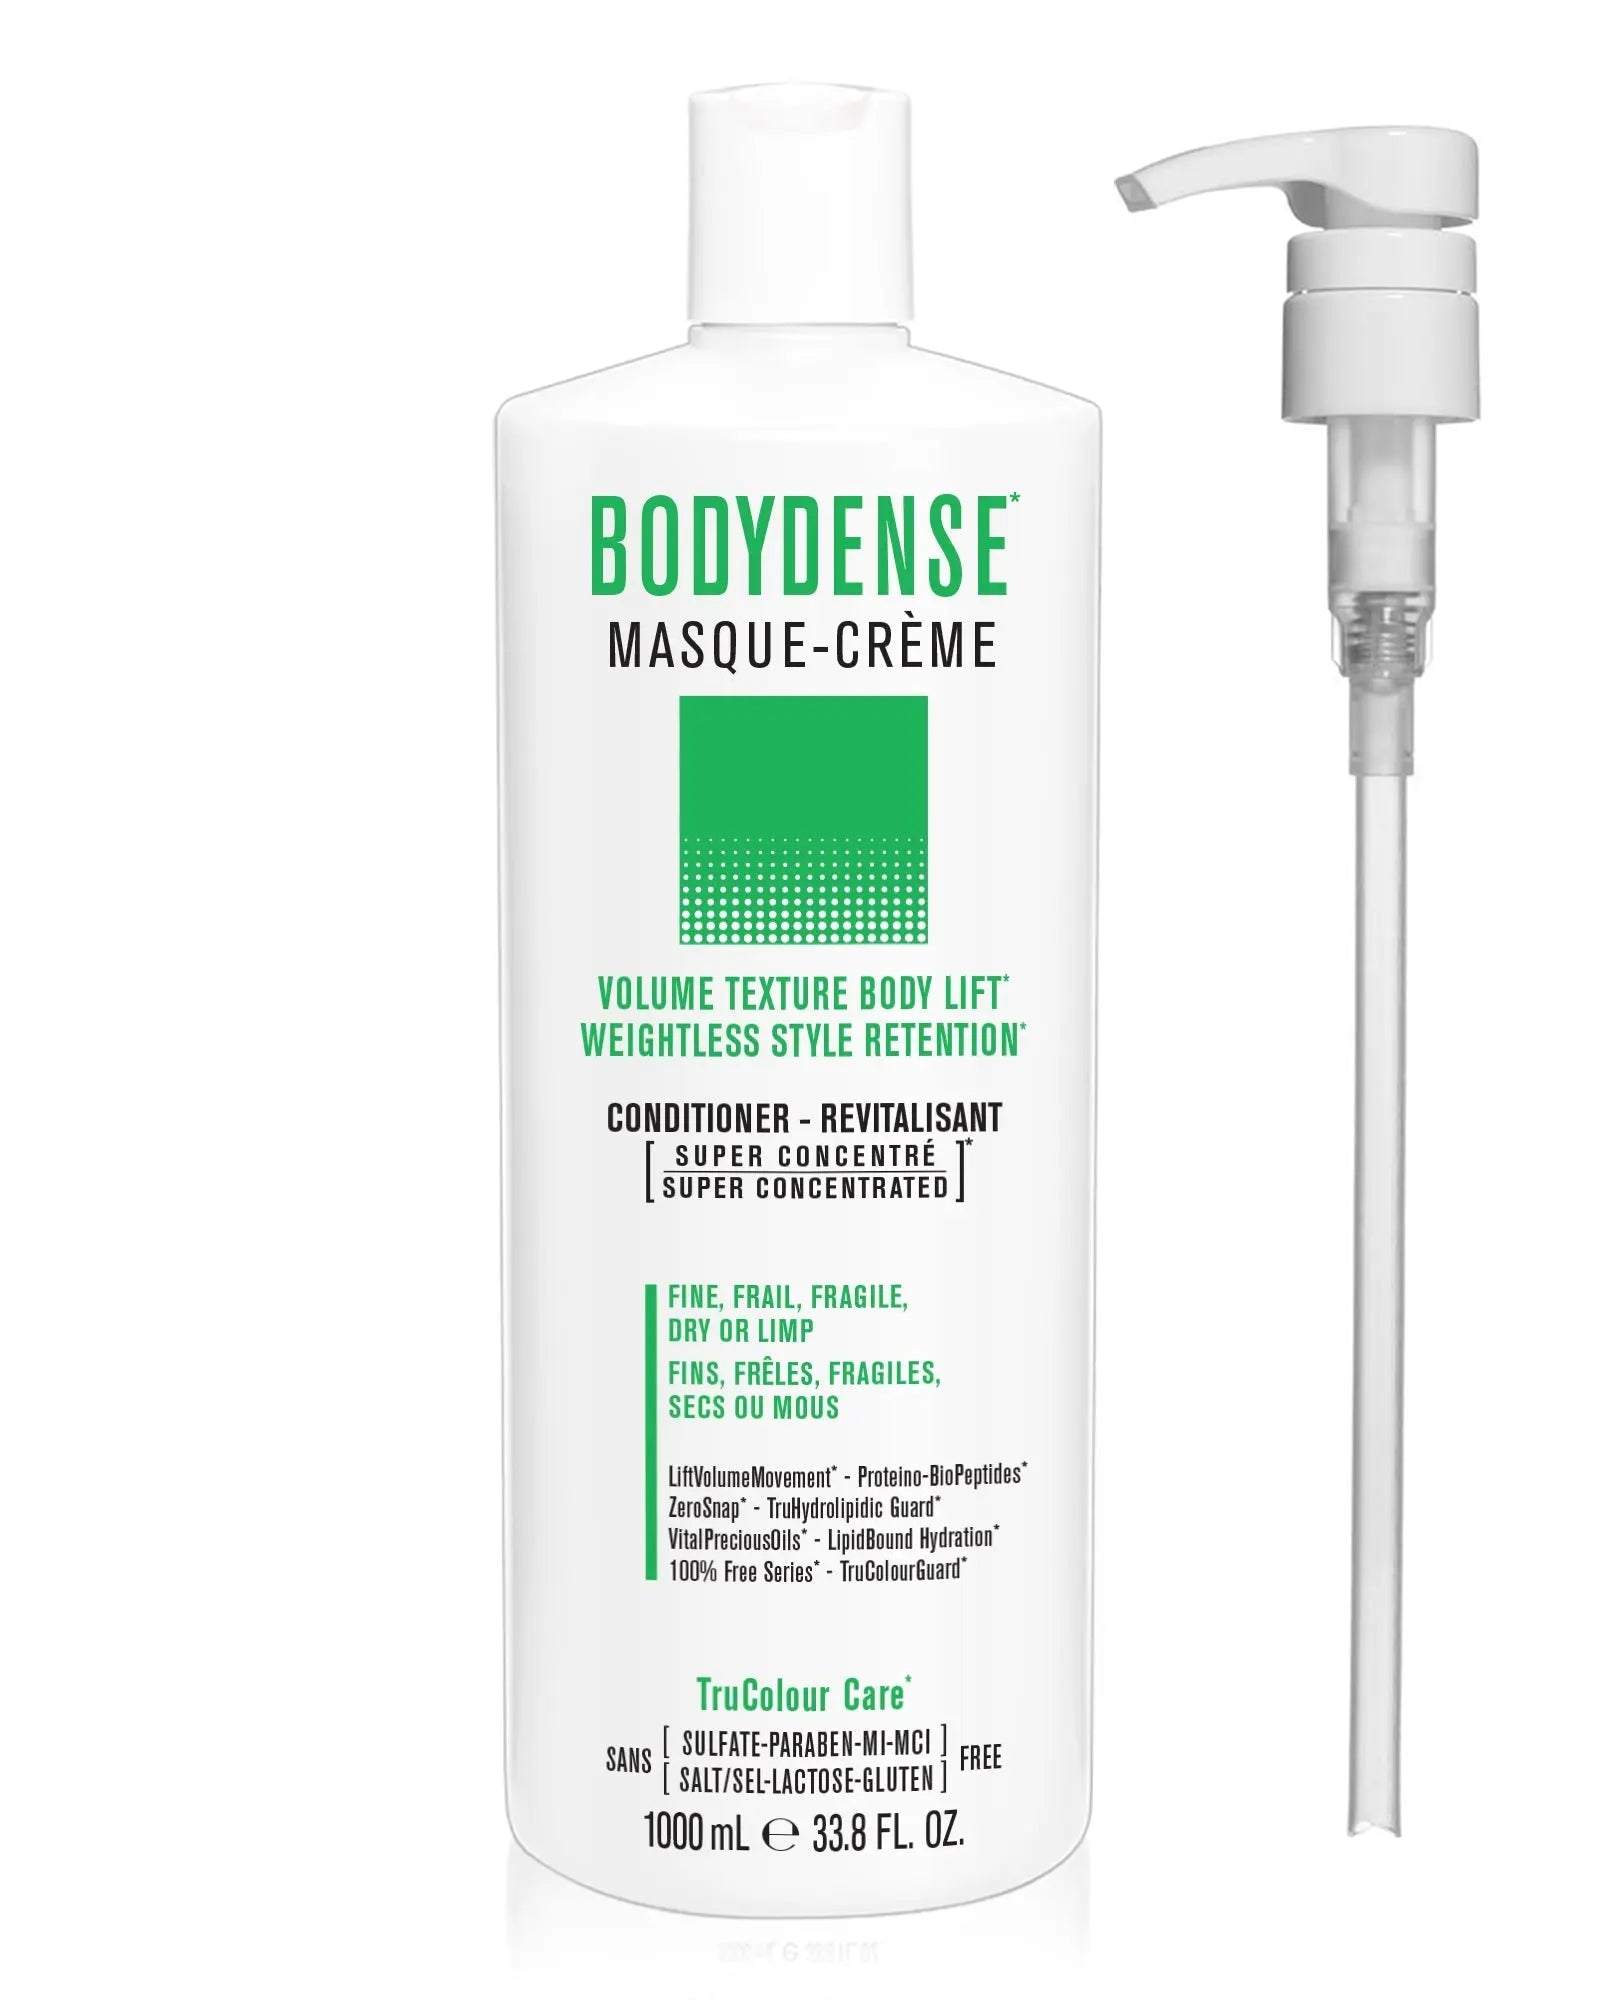 BODYDENSE Masque-Creme (conditioner) 33.8 FL. OZ. + Pump - SNOBGIRLS.com